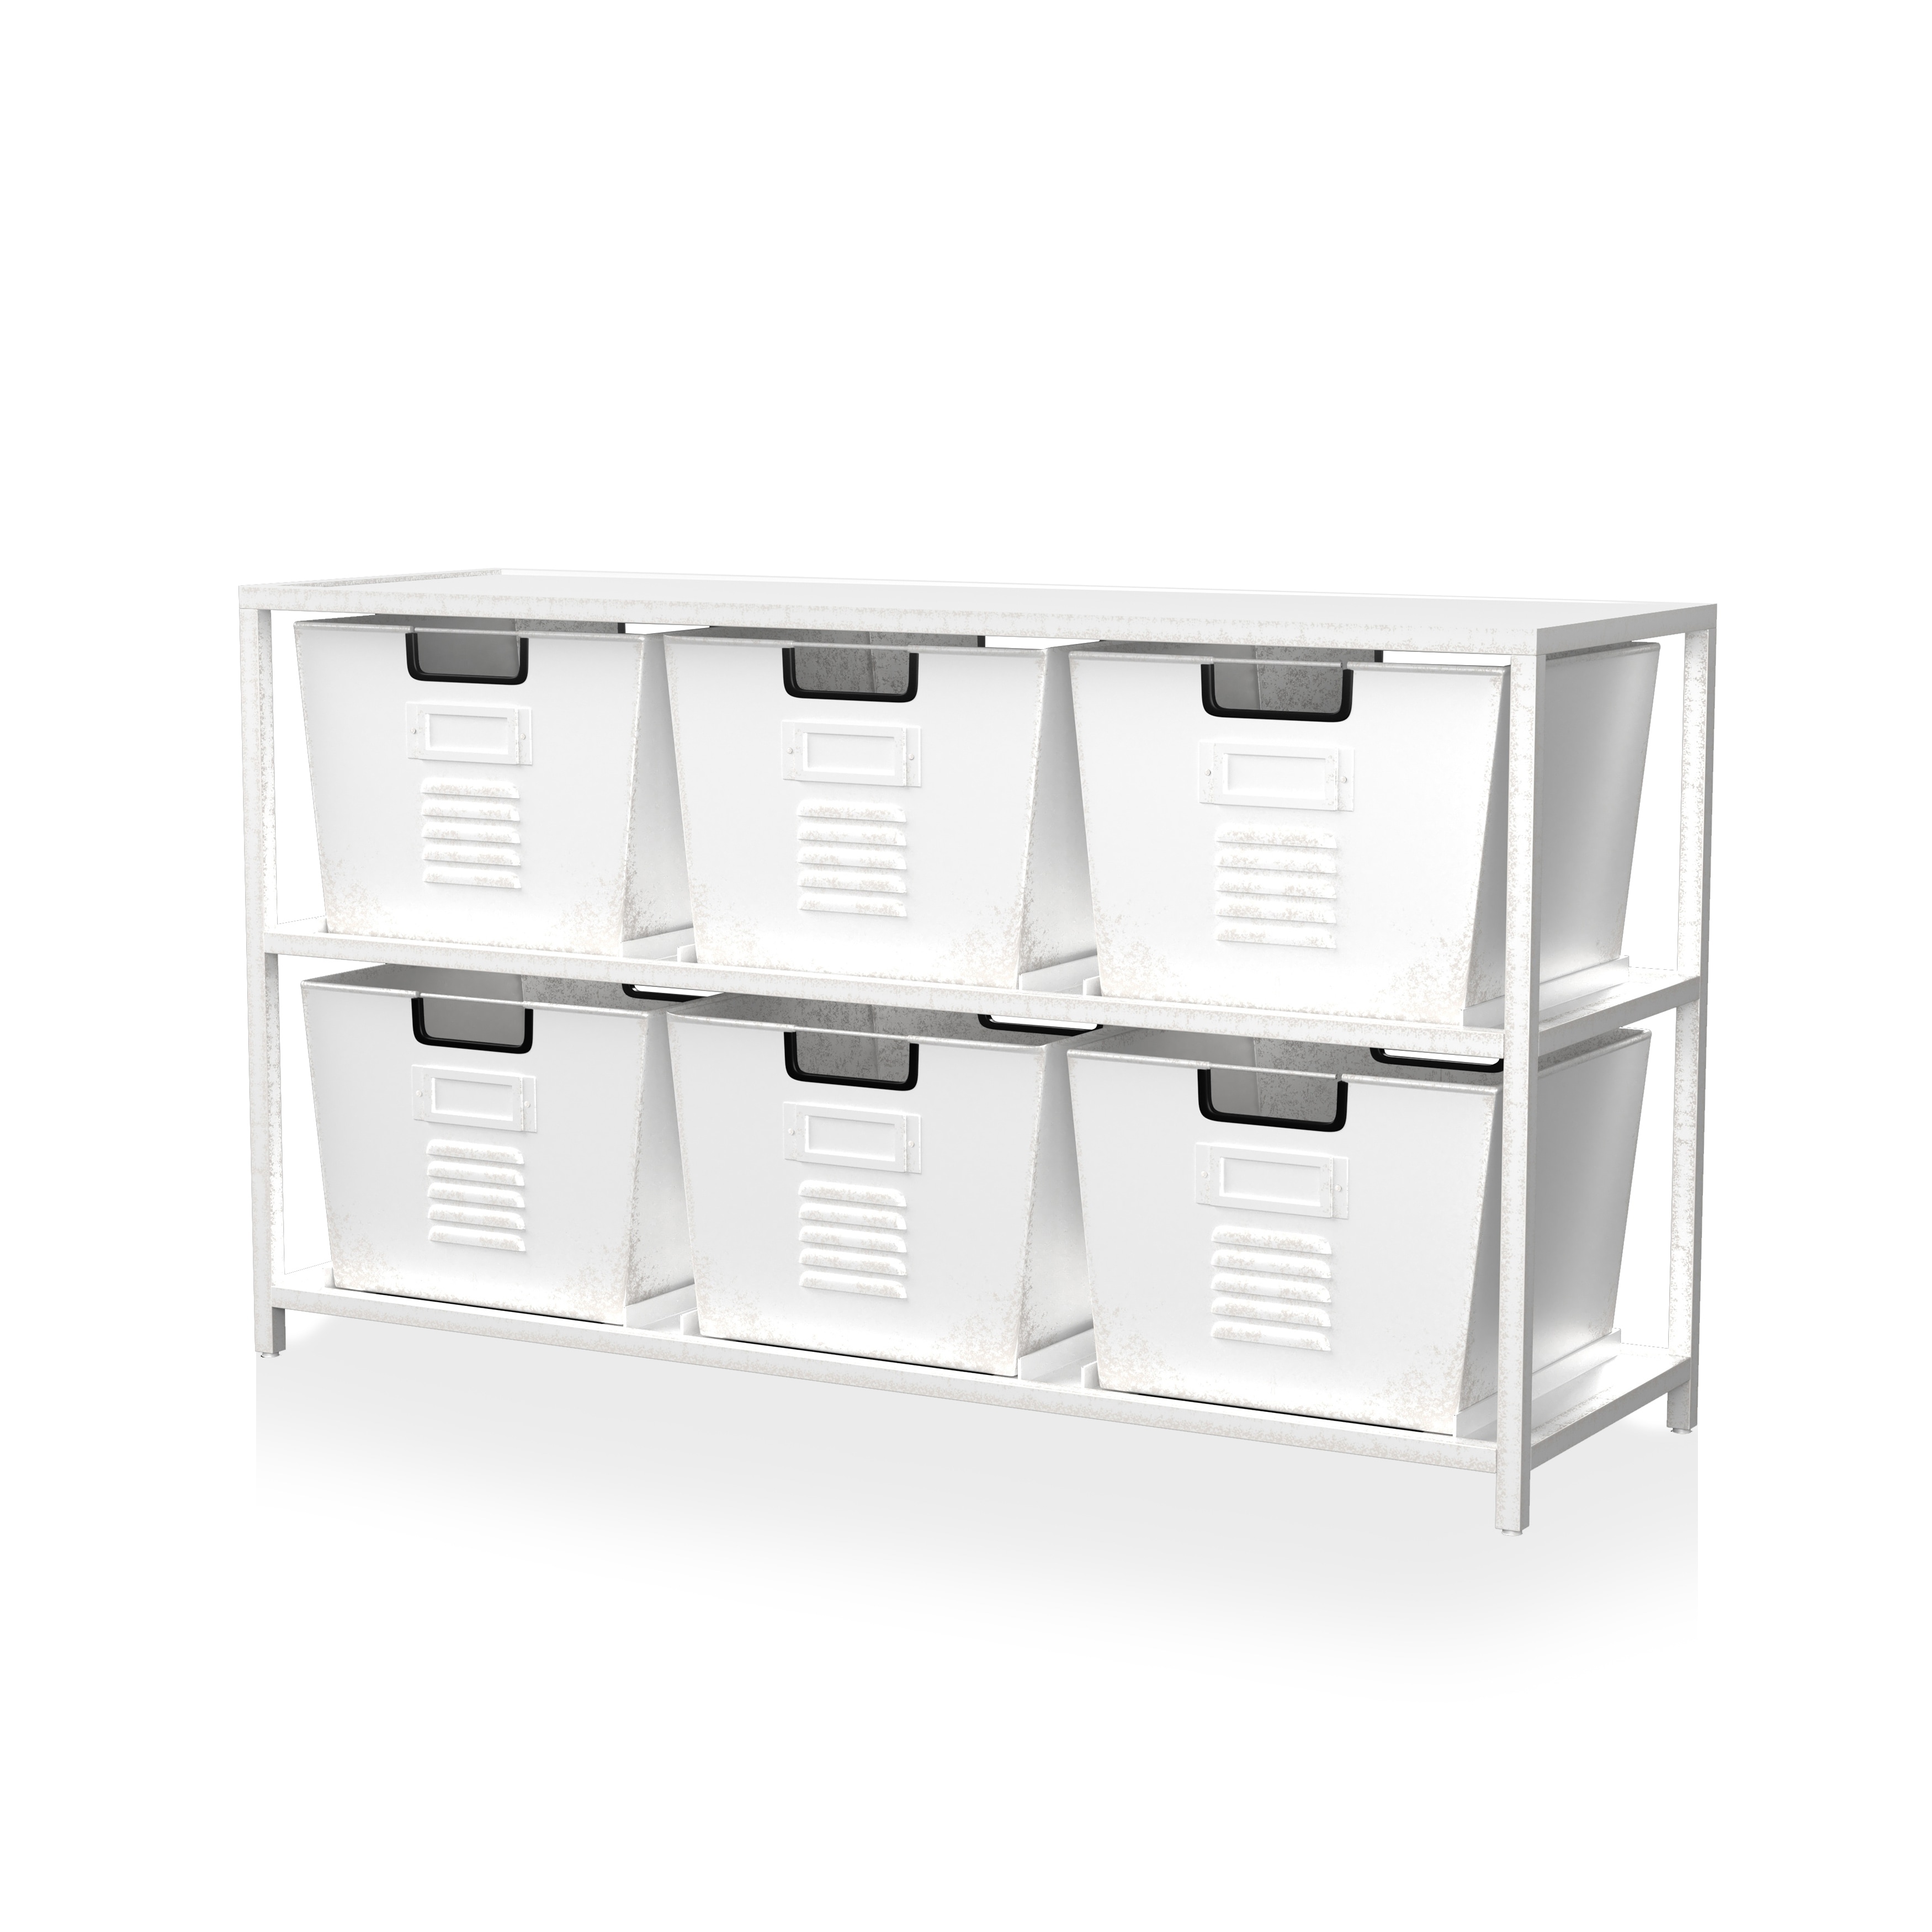 Metal Storage Cases / Organizer Bins